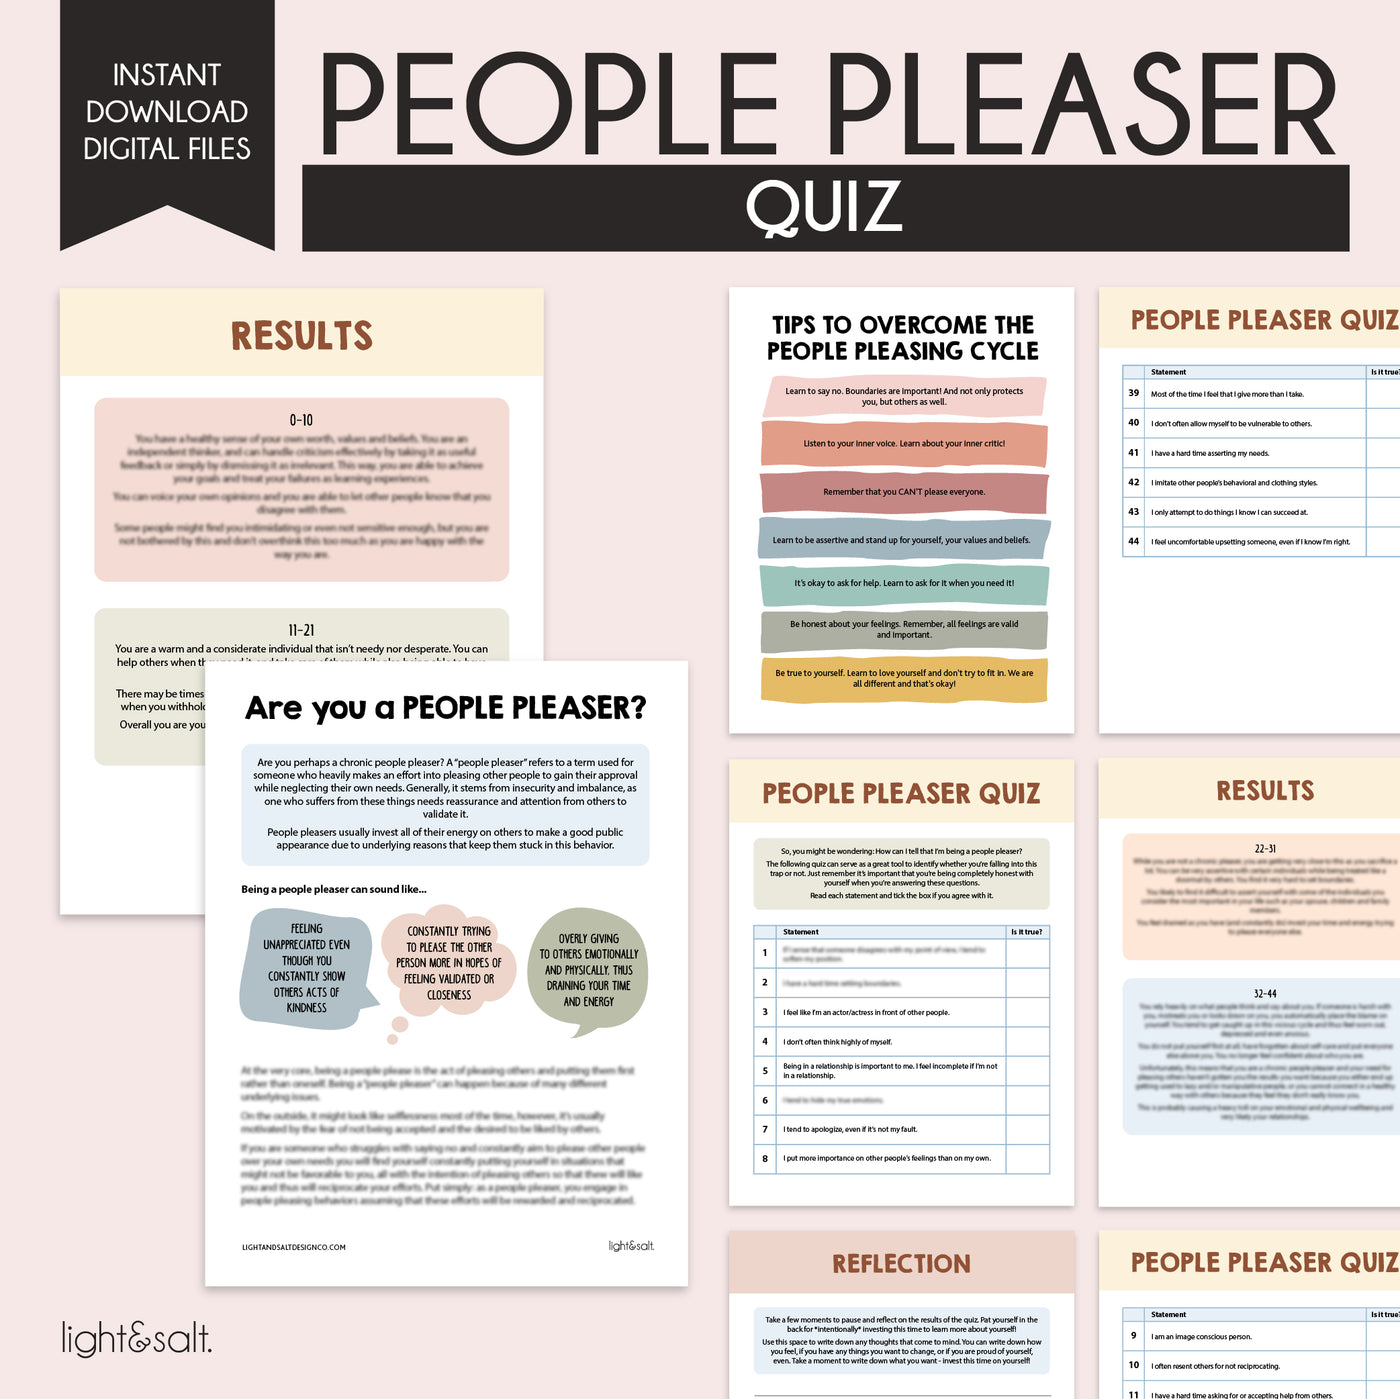 People pleaser quiz